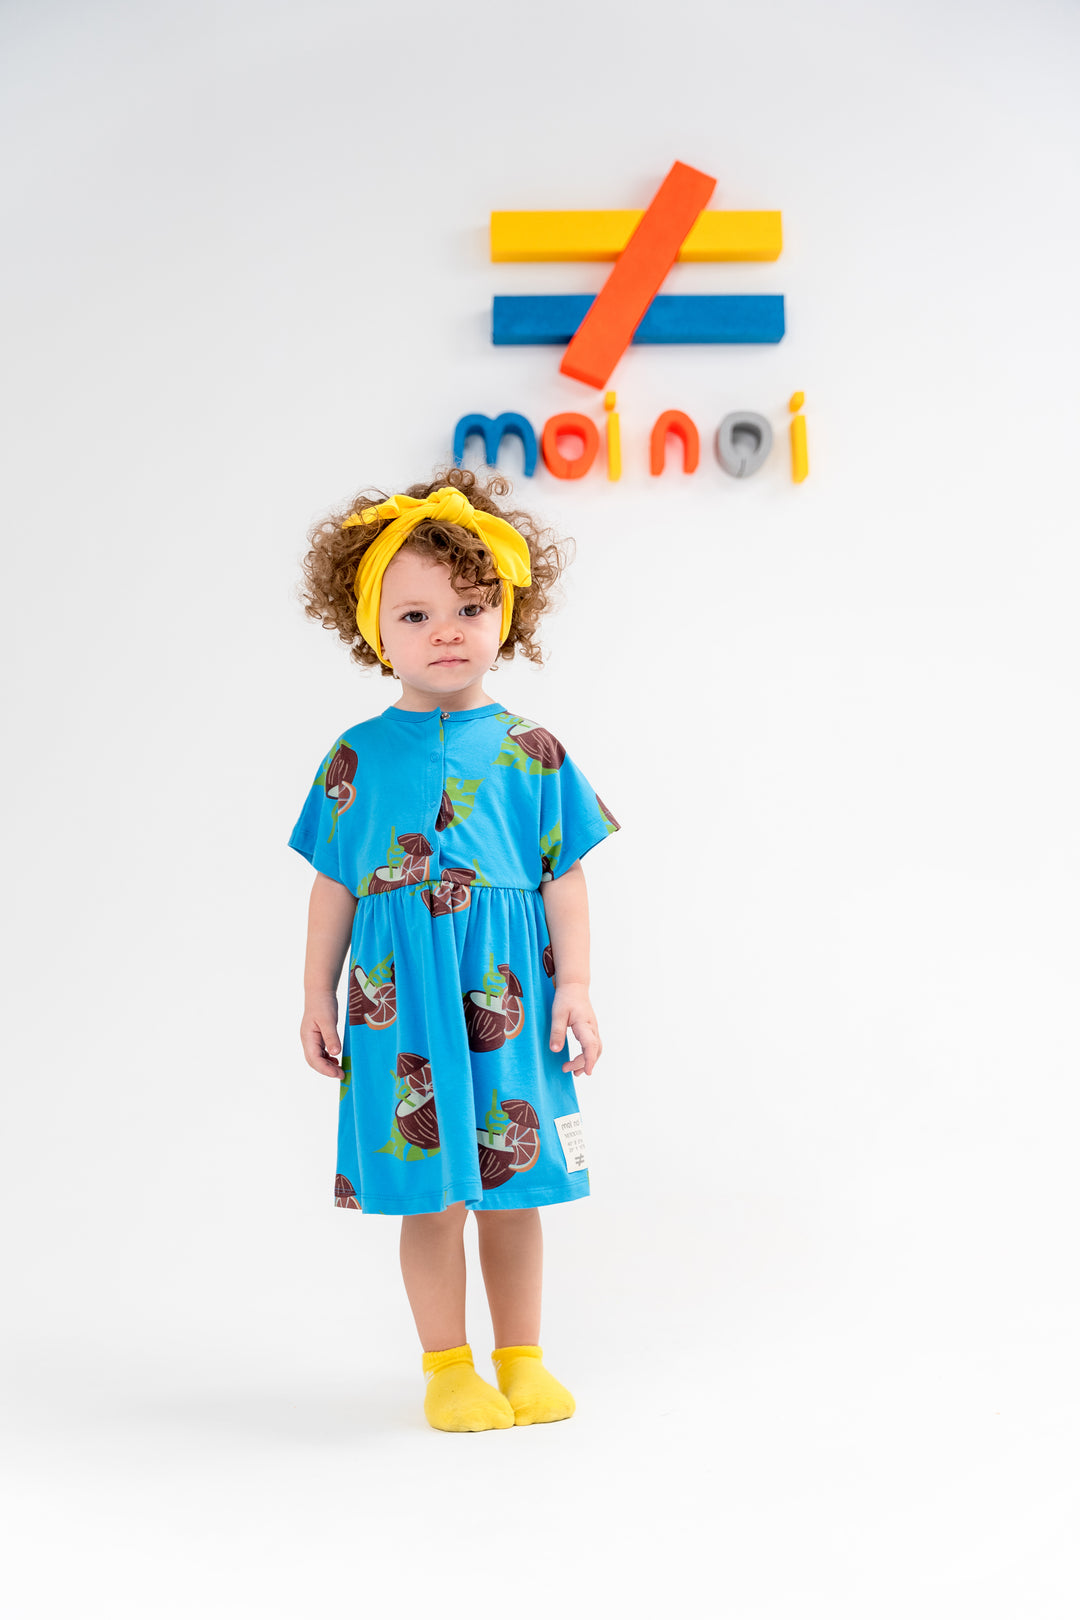 kids-atelier-moi-noi-kid-baby-girl-orange-fig-print-summer-dress-mn8018-orange